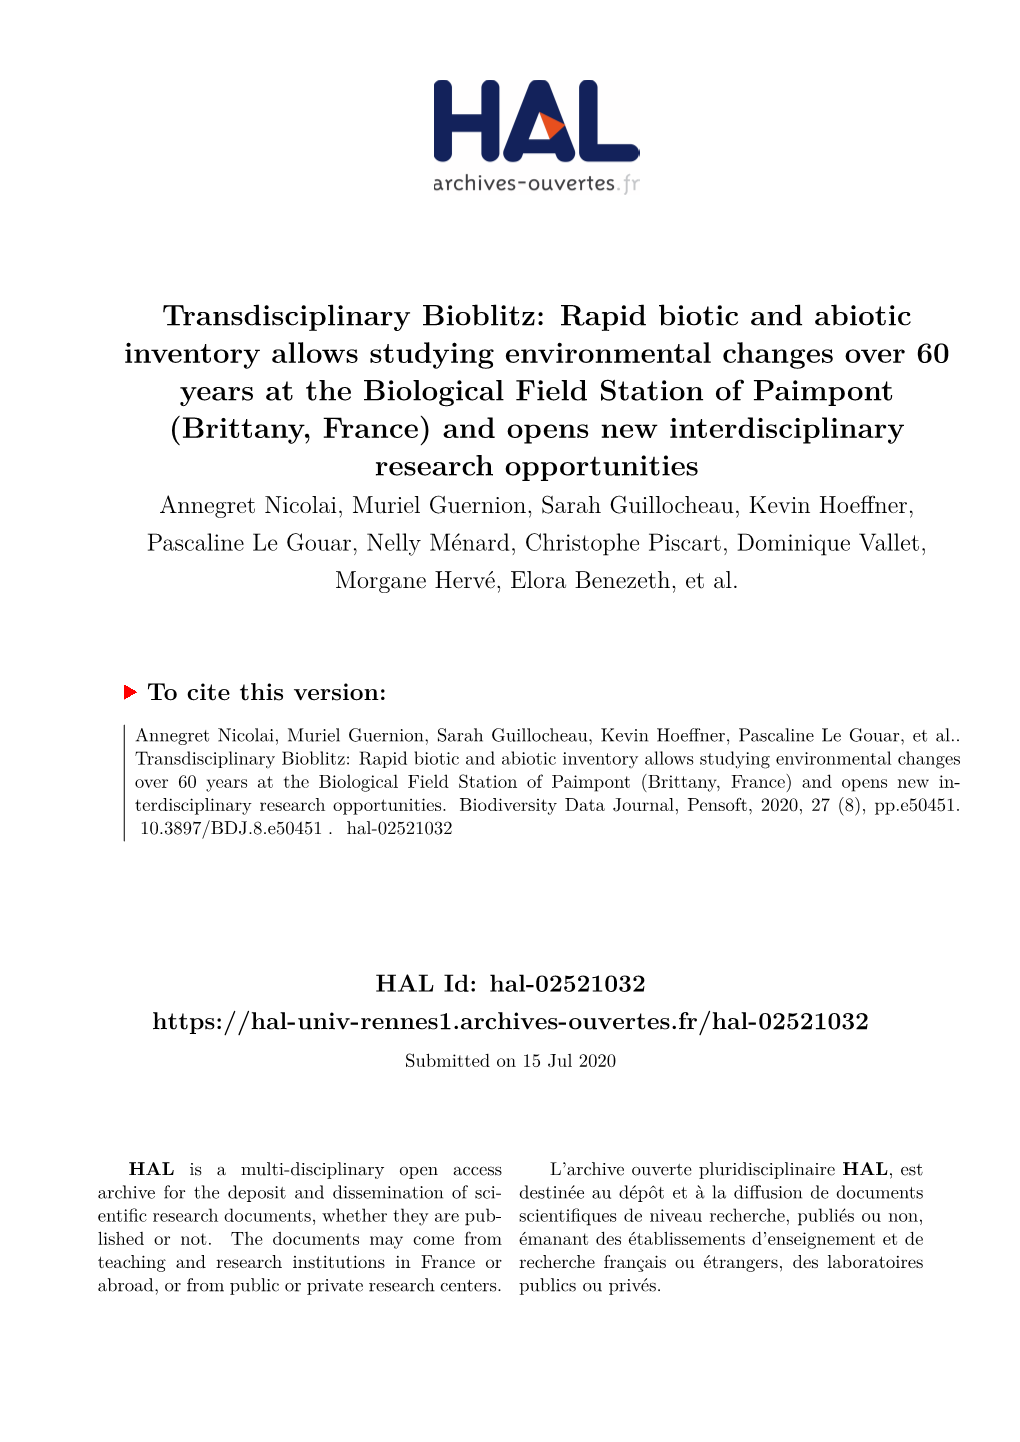 Transdisciplinary Bioblitz: Rapid Biotic and Abiotic